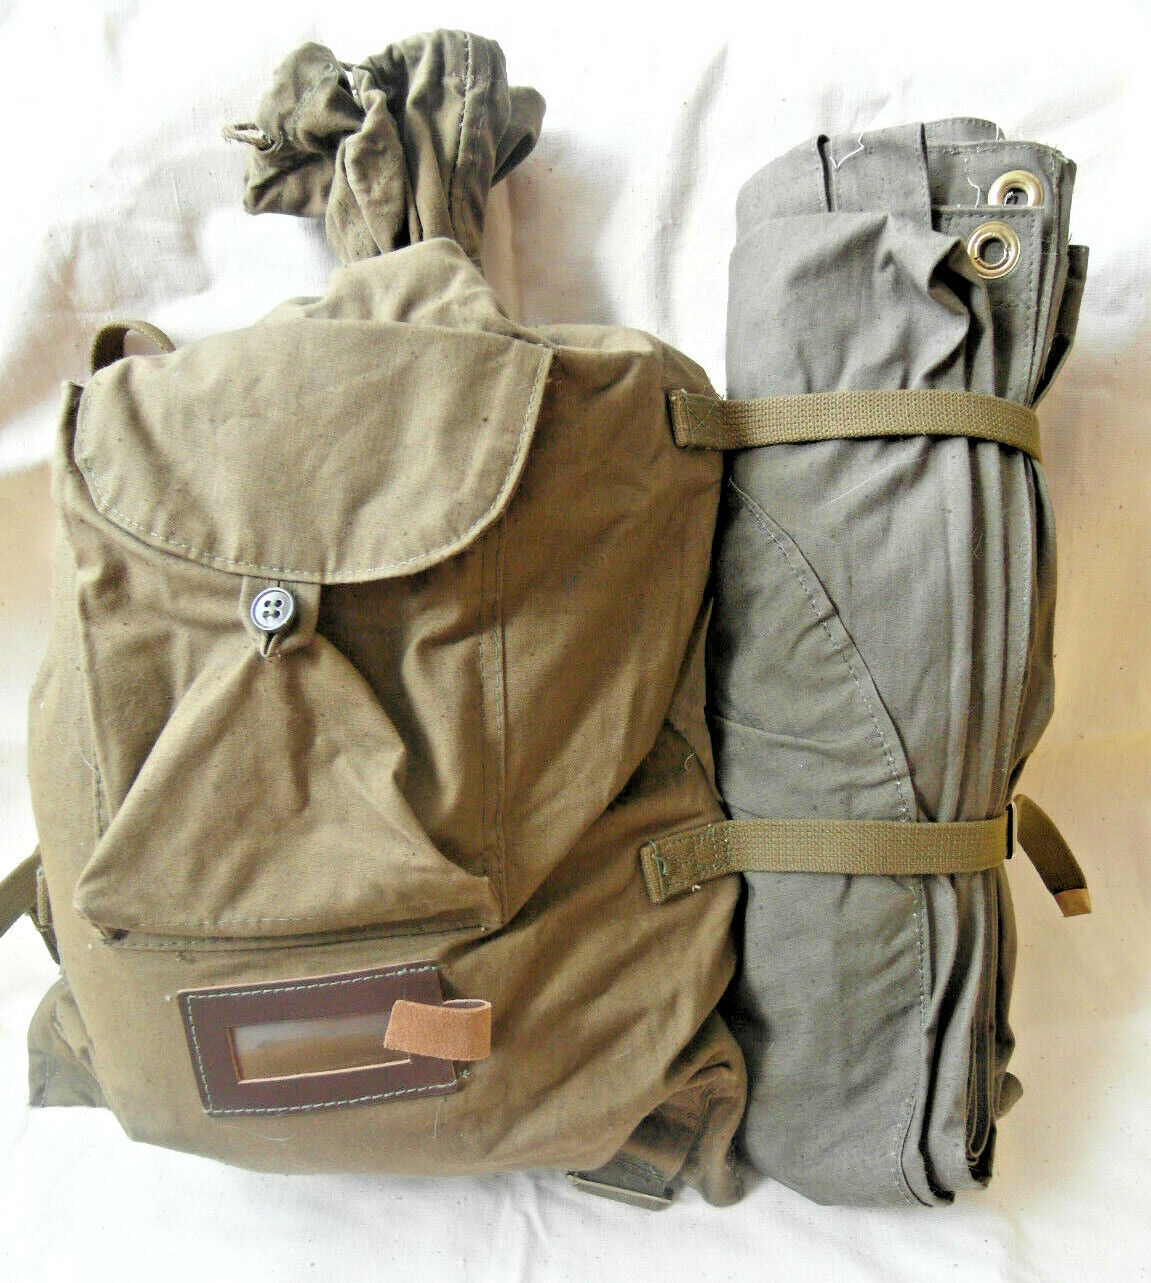 Soviet backpack veshmeshok rucksack 30L& groundsheet USSR Army